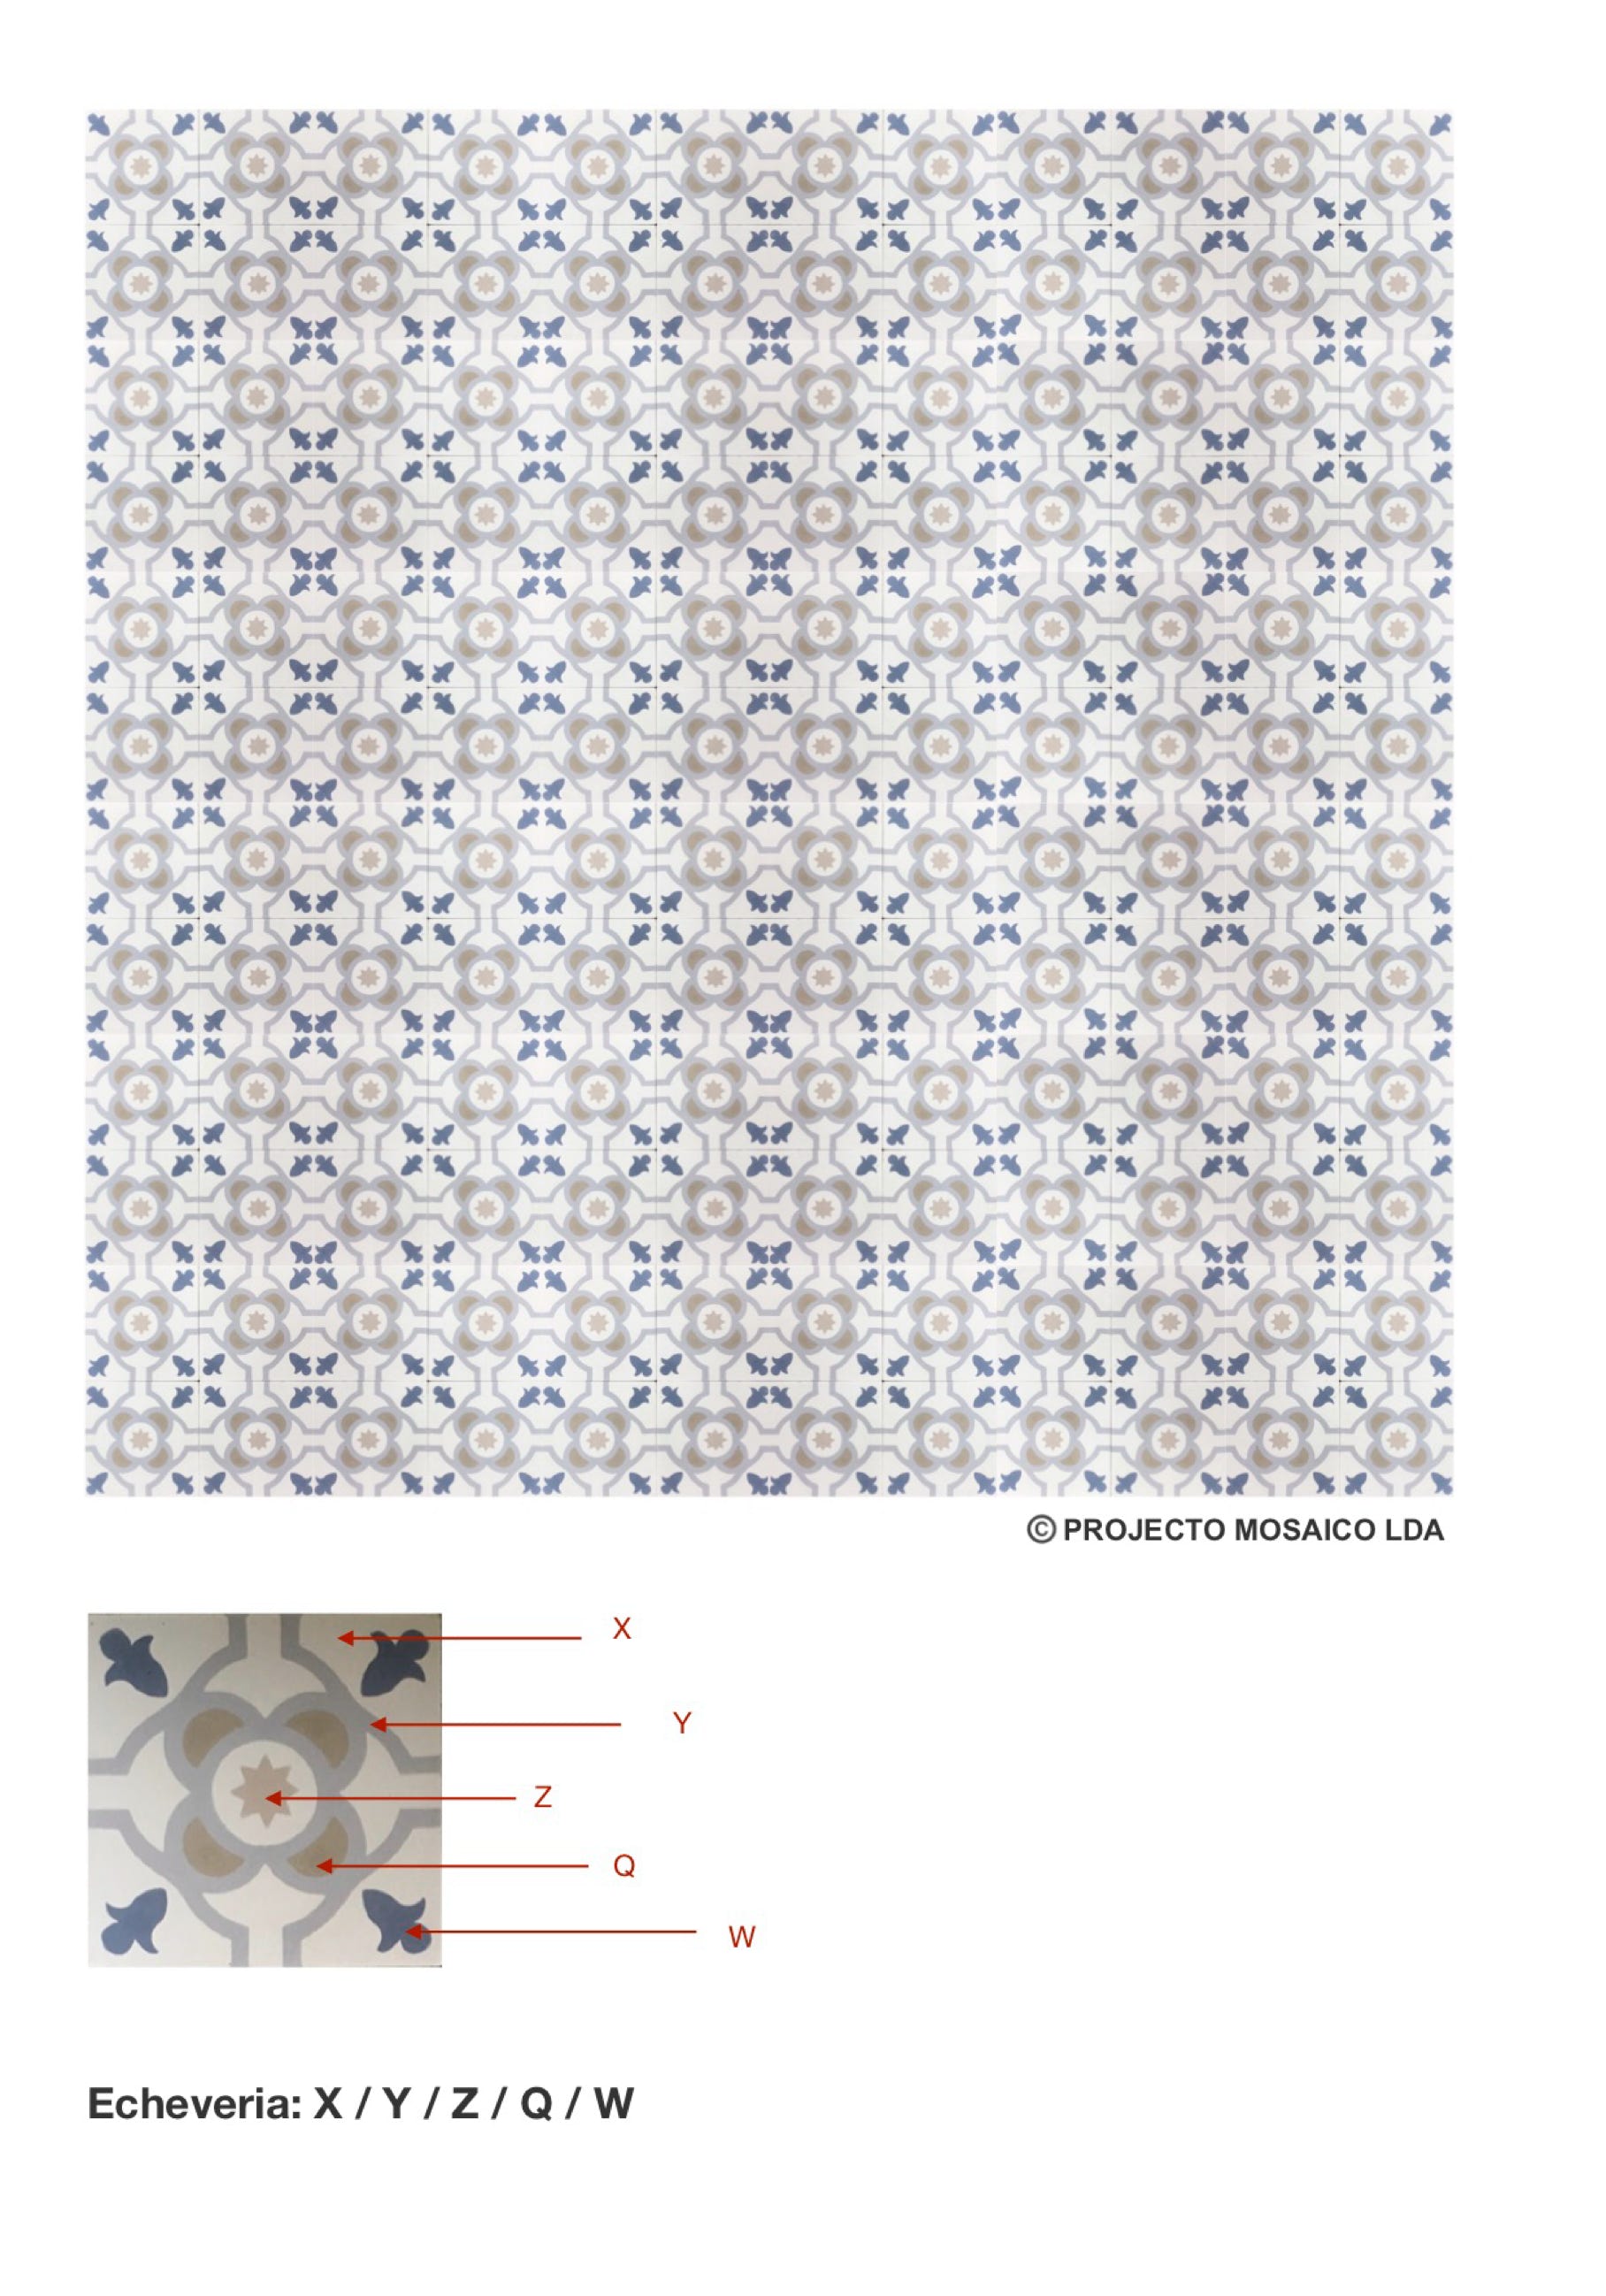 illustração de aplicação do mosaico hidráulico ref: Echeveria